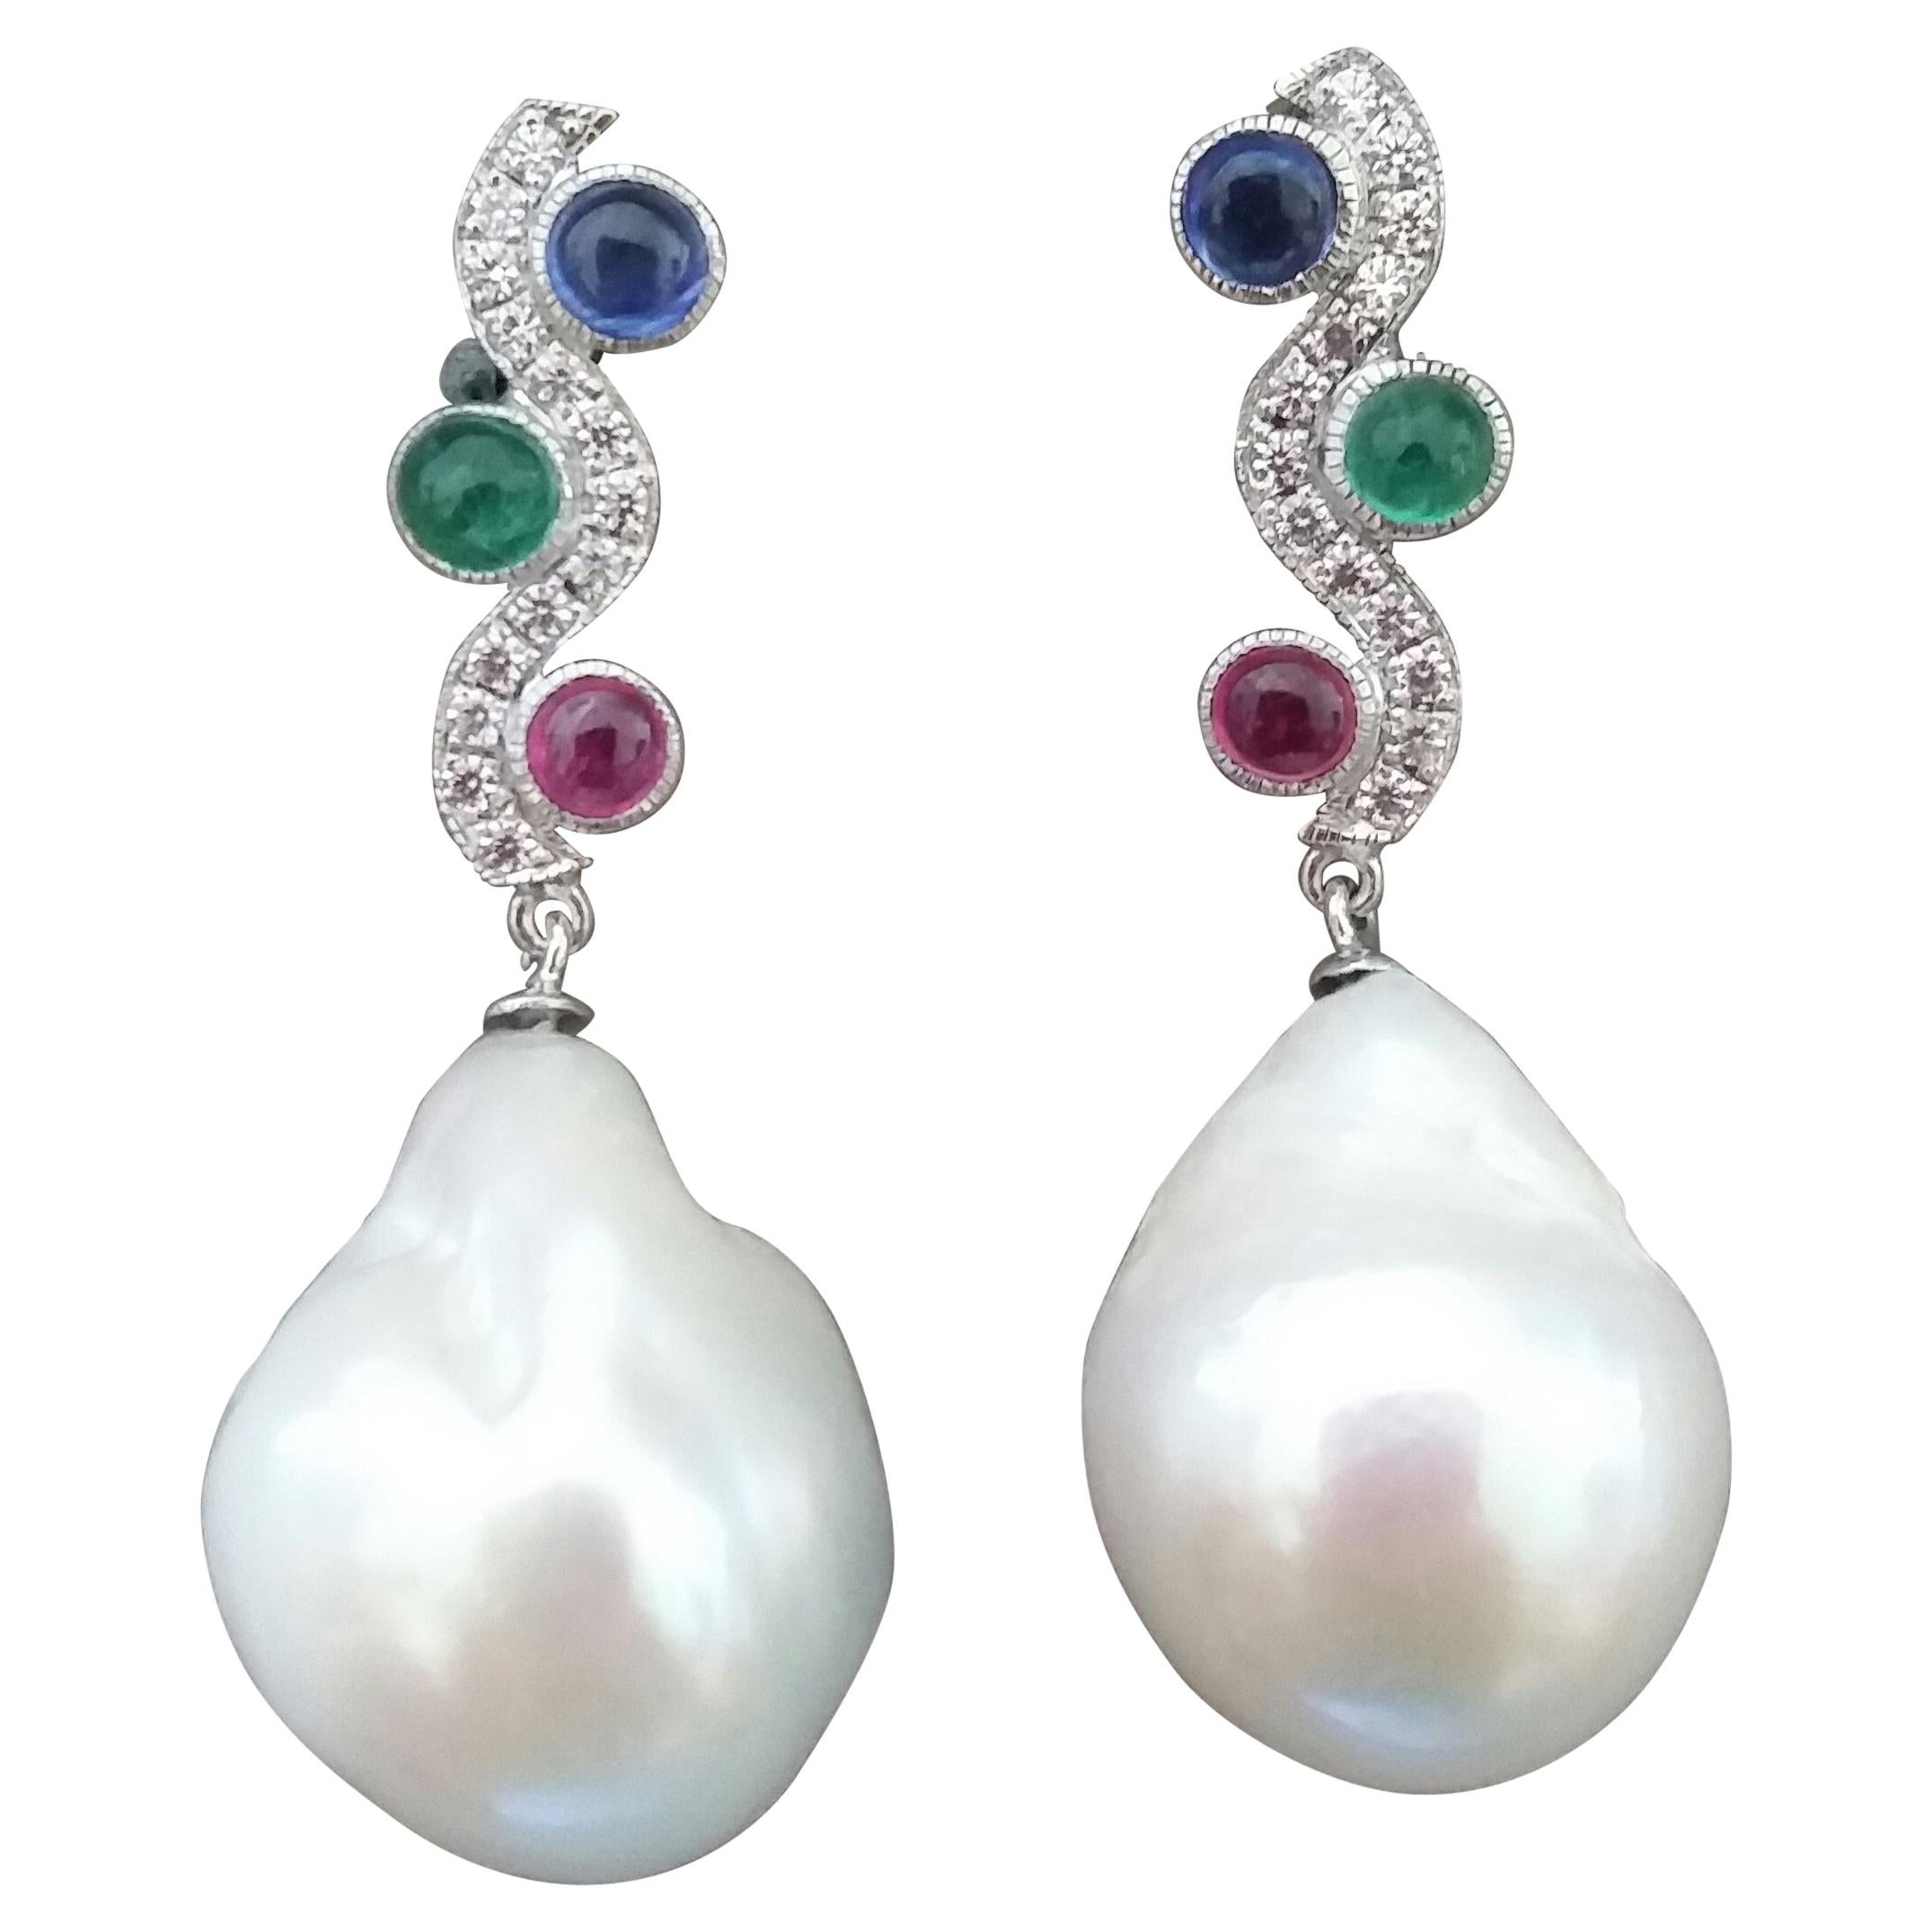 Tutti Frutti Pendants d'oreilles en or avec rubis, saphirs, émeraudes, diamants et perles baroques